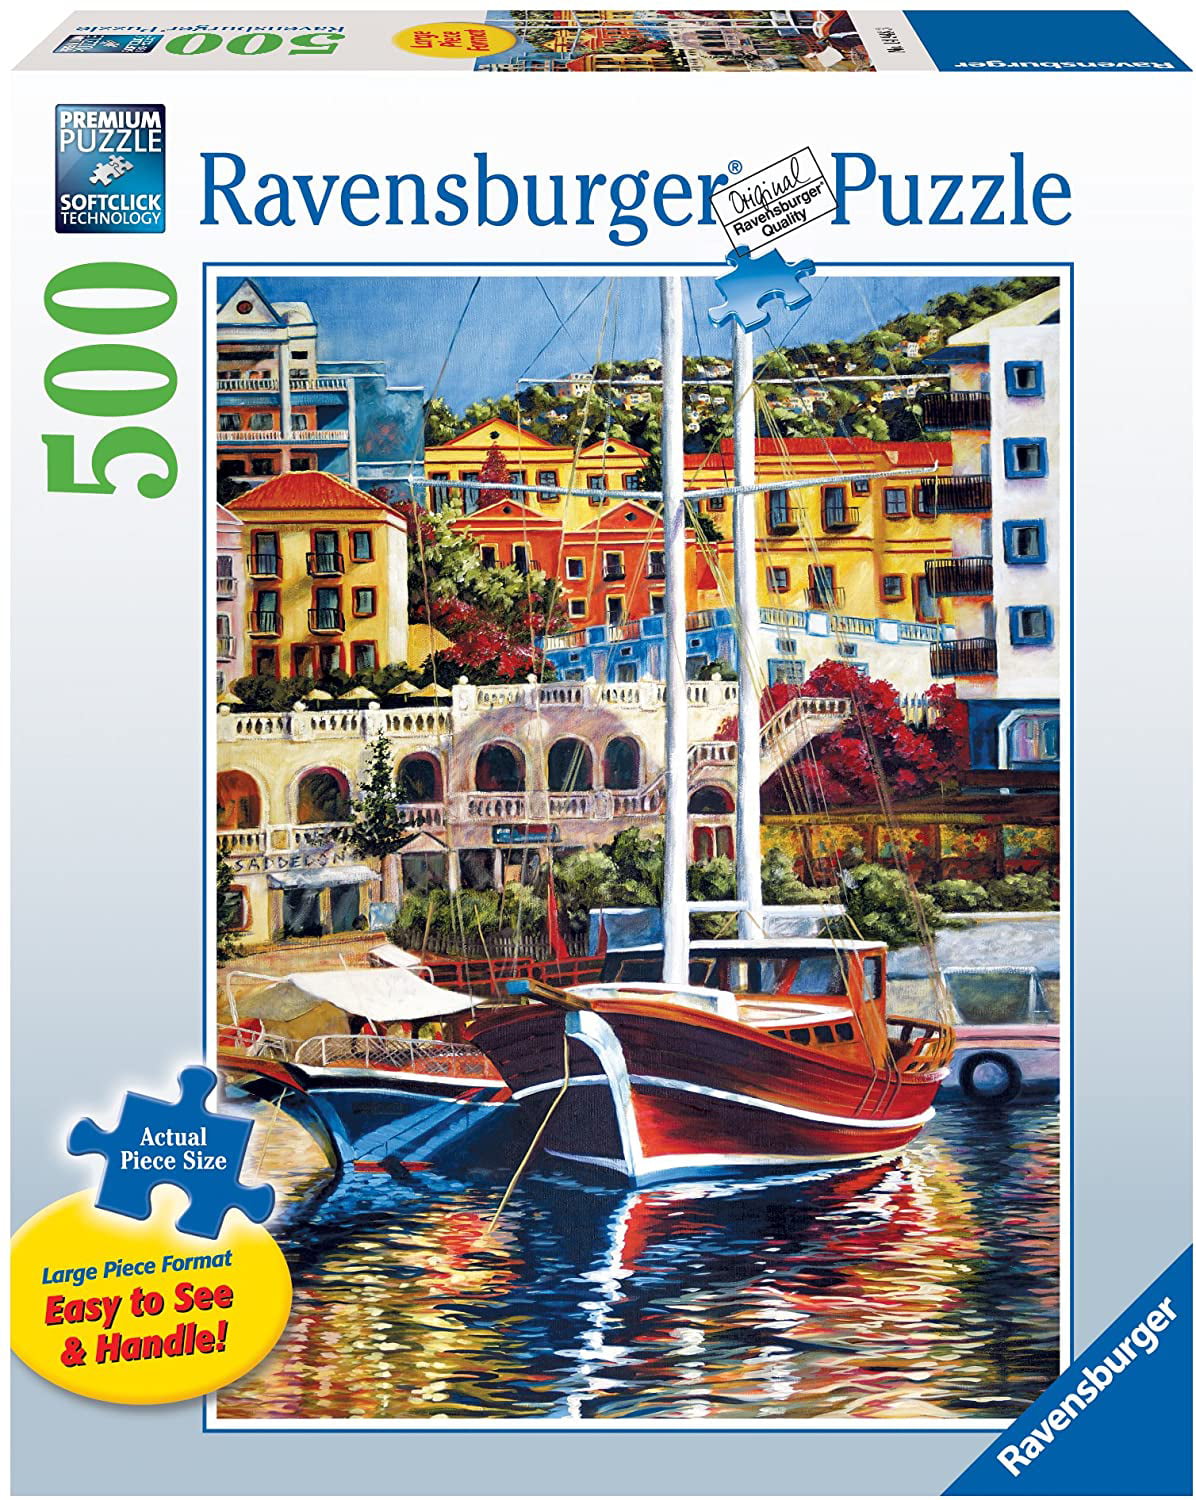 Ravensburger Maritime Flair Jigsaw Puzzle (500 Pieces) – PDK